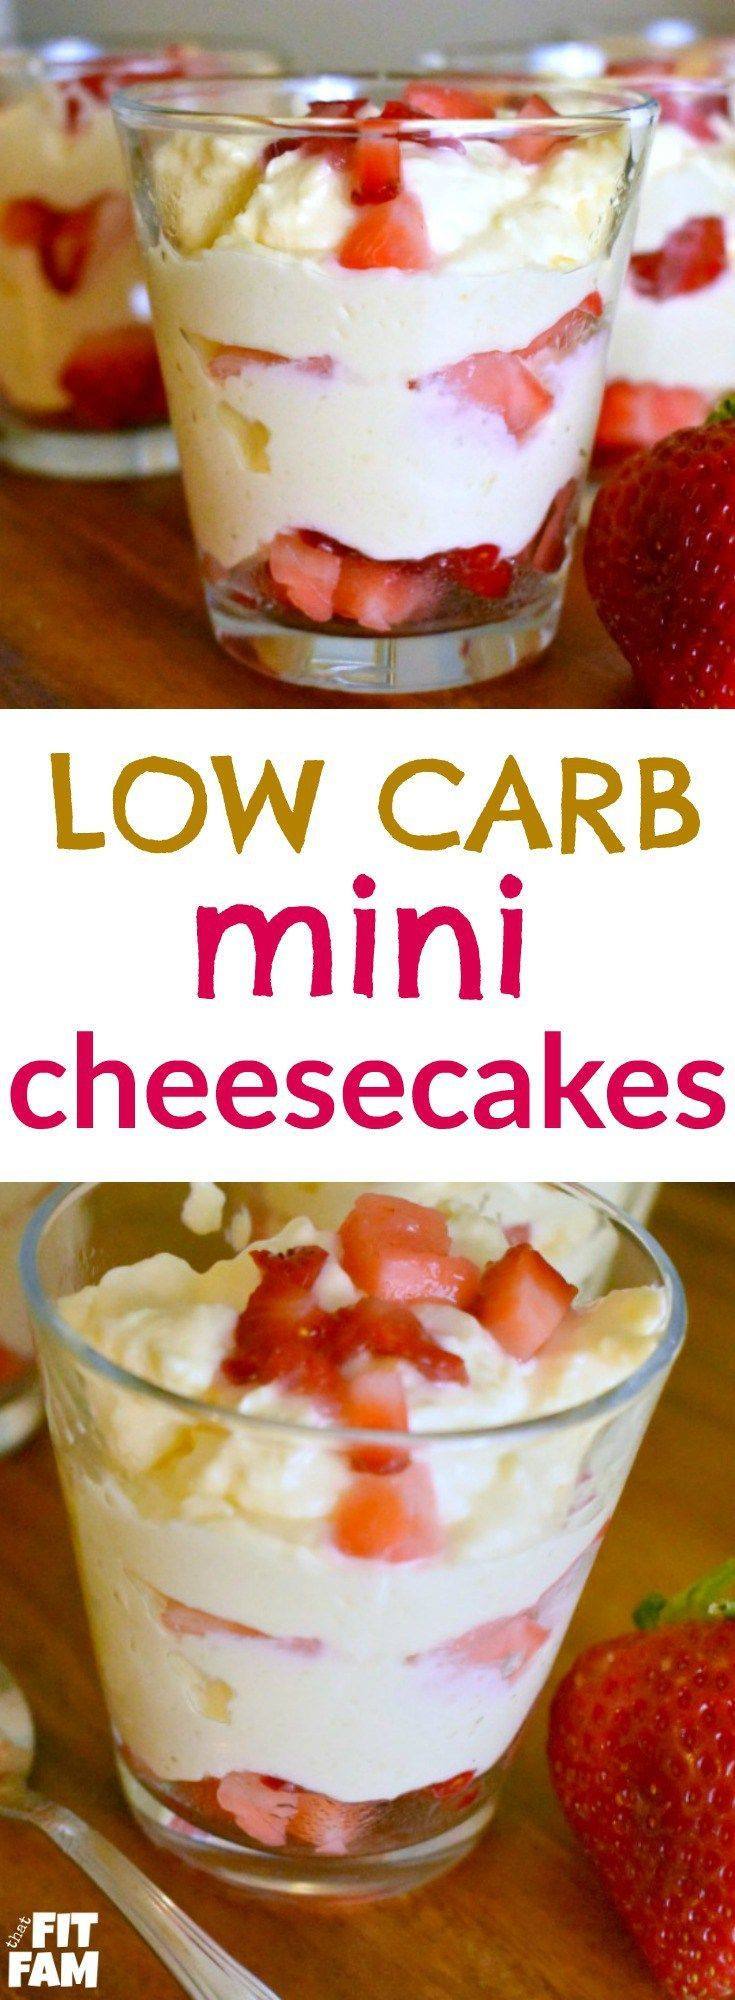 Low Carb Dessert Ideas
 Best 25 Low Carb Desserts ideas on Pinterest